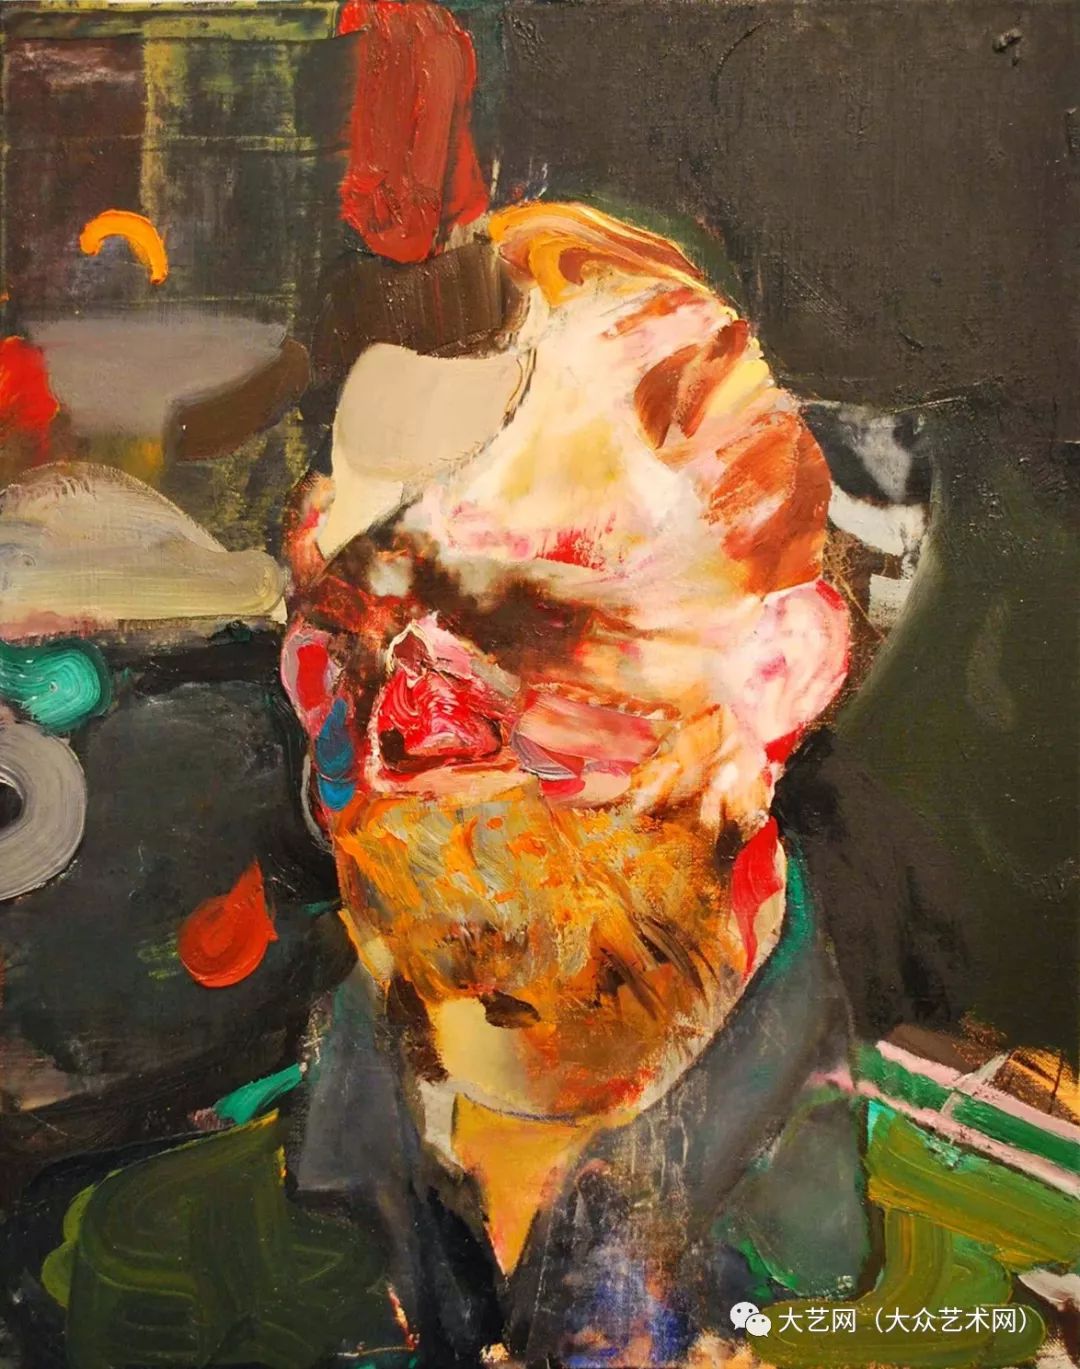 斑驳的现实与扭曲的人性 —— 罗马尼亚当代人文表现主义画家阿德里安